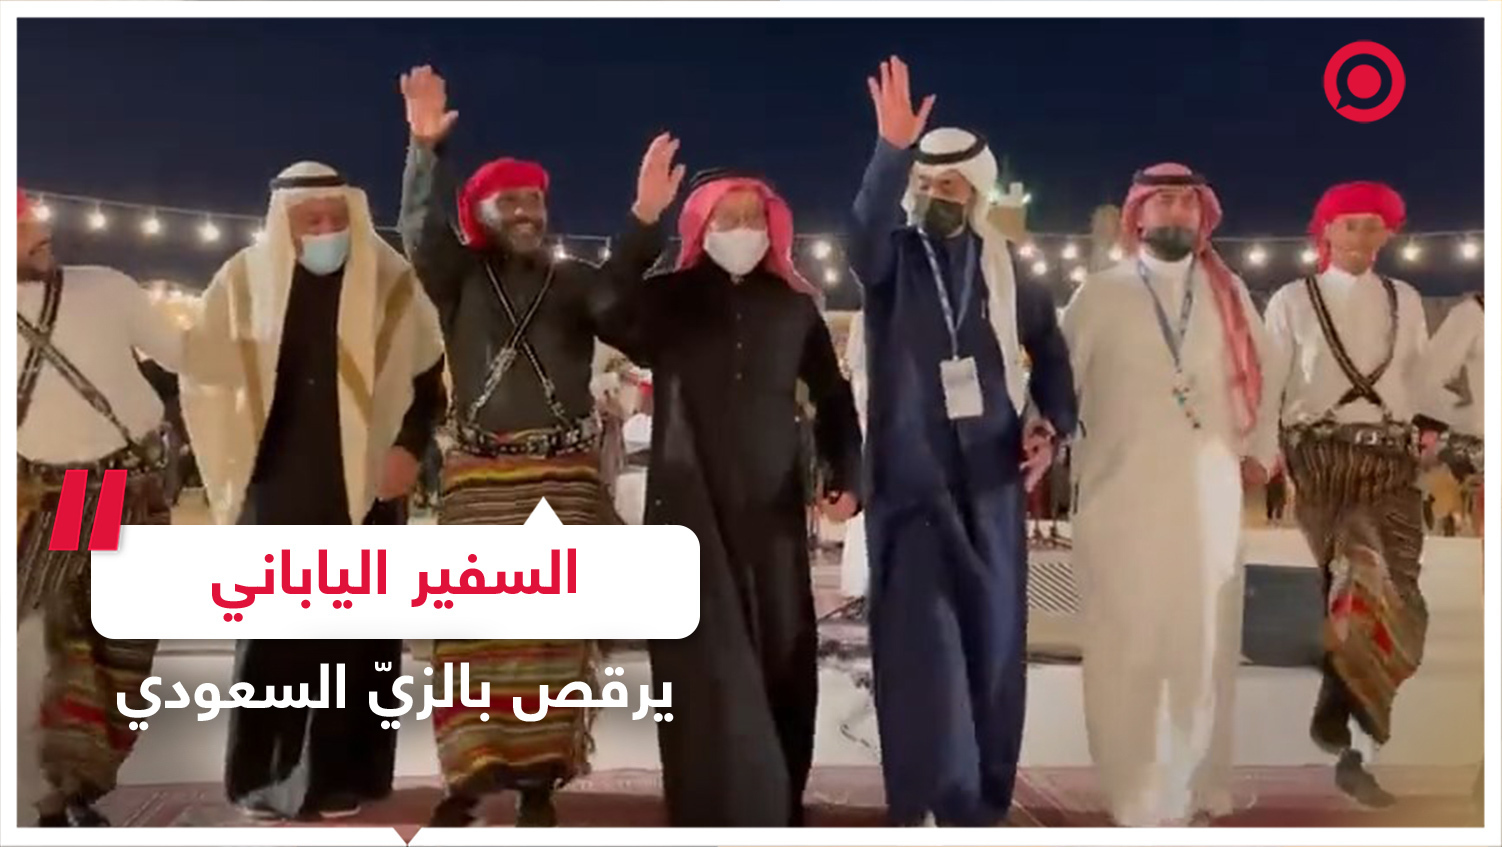 السفير الياباني يؤدي رقصات سعودية تقليدية